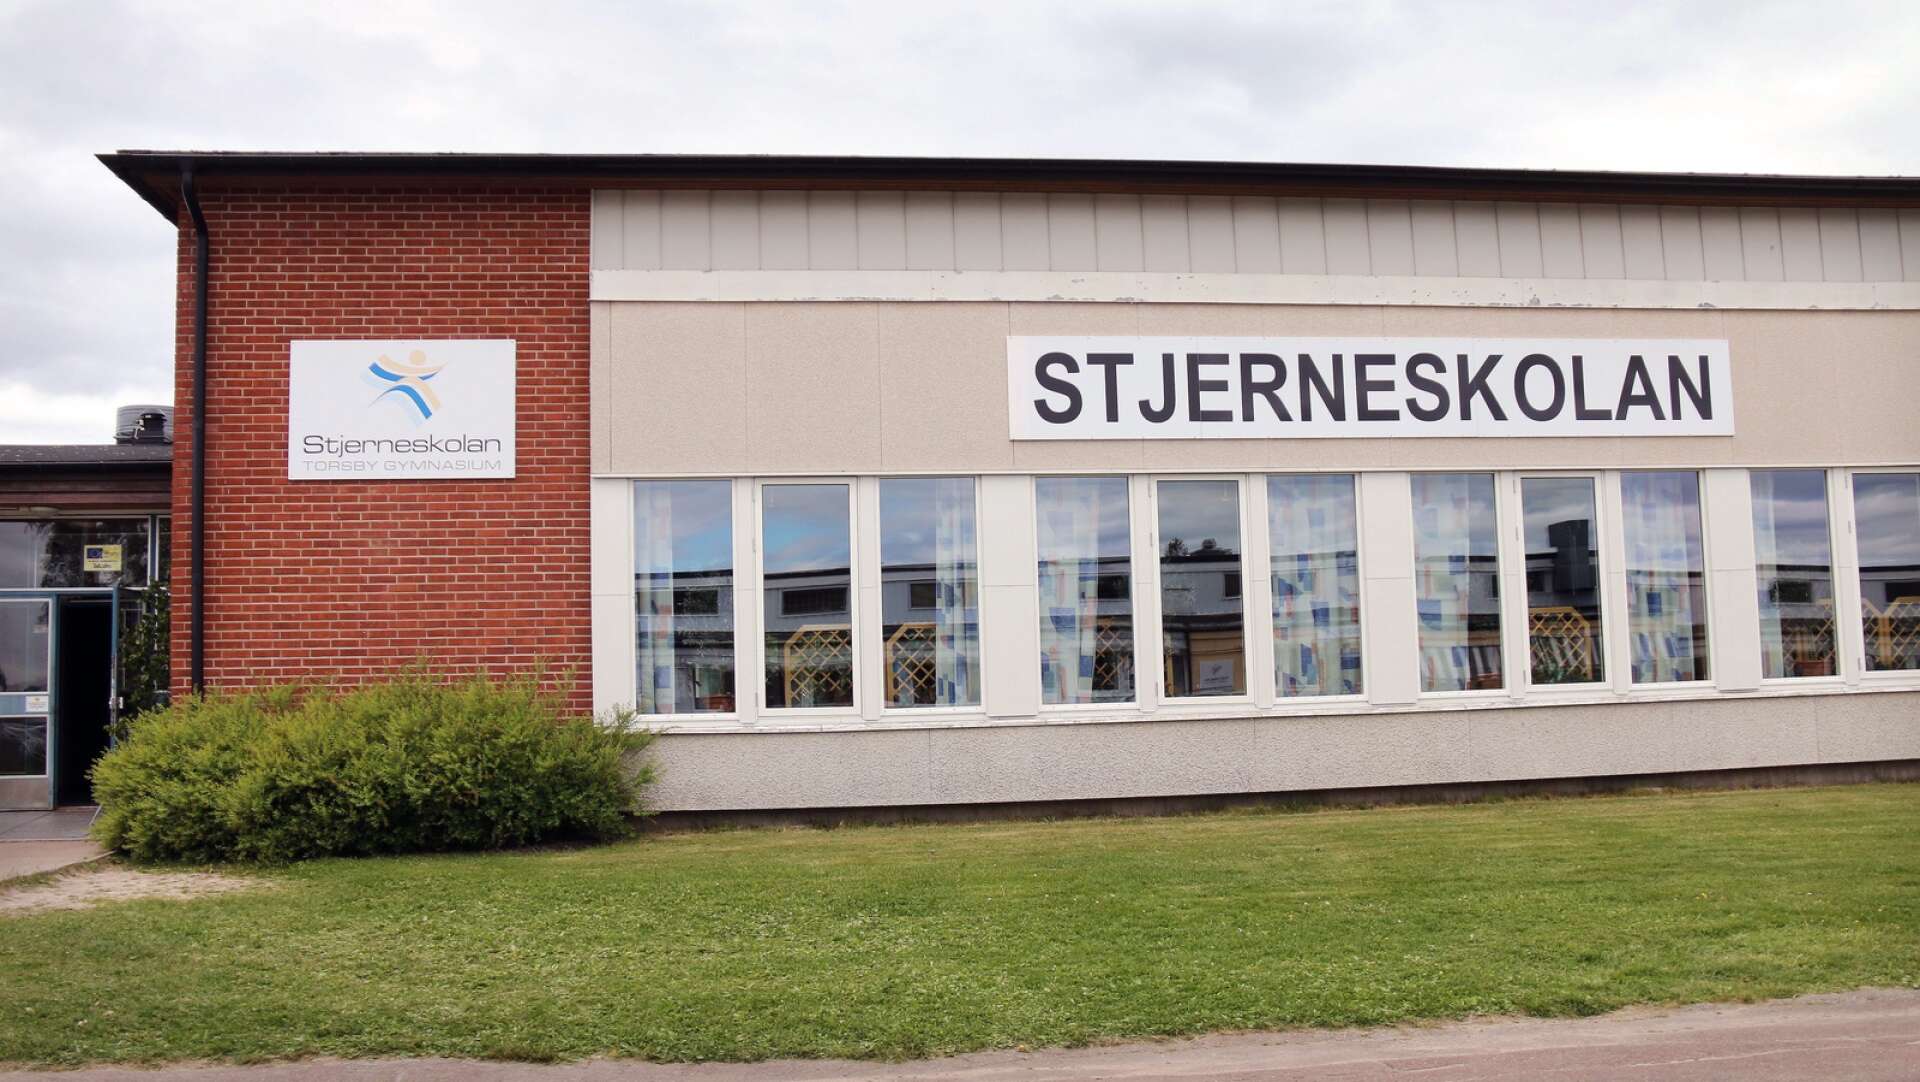 Samtliga 121 åttondeklassare i kommunen får, förutom att besöka minst tre företag och arbetsplatser, dessutom stifta bekantskap med Stjerneskolan och dess gymnasieprogram.